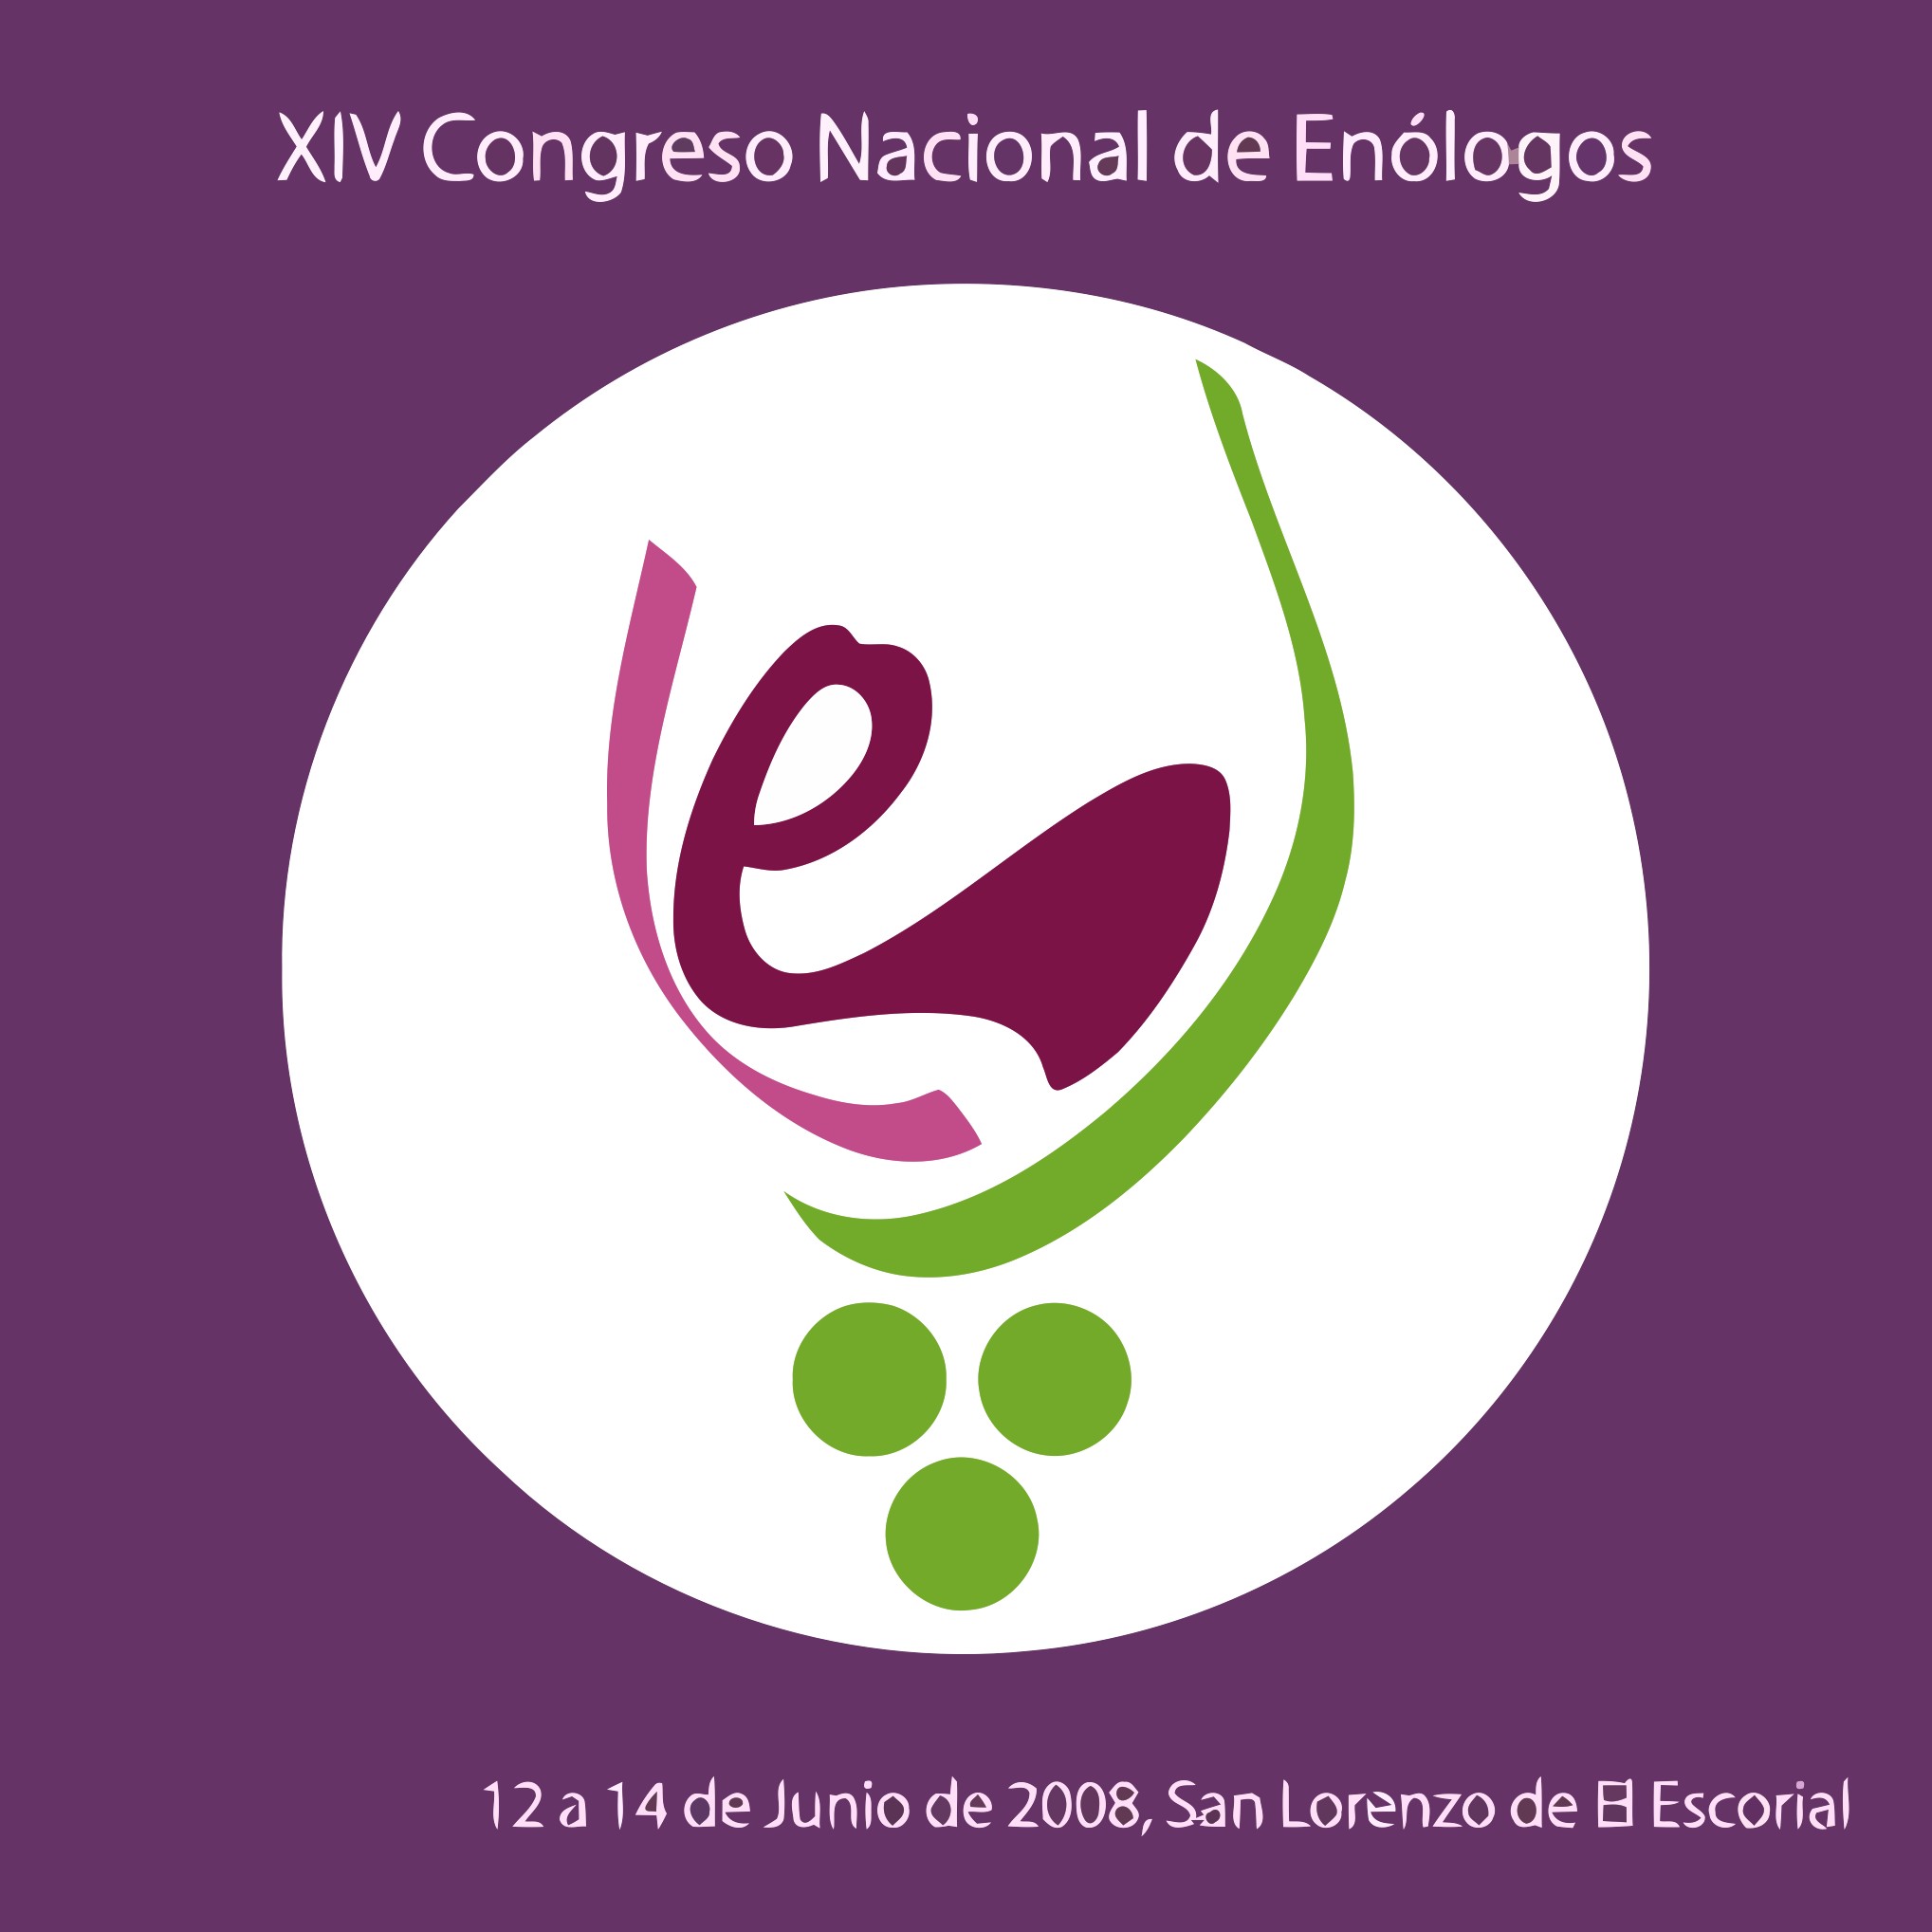 XIV Congreso Nacional de Enólogos